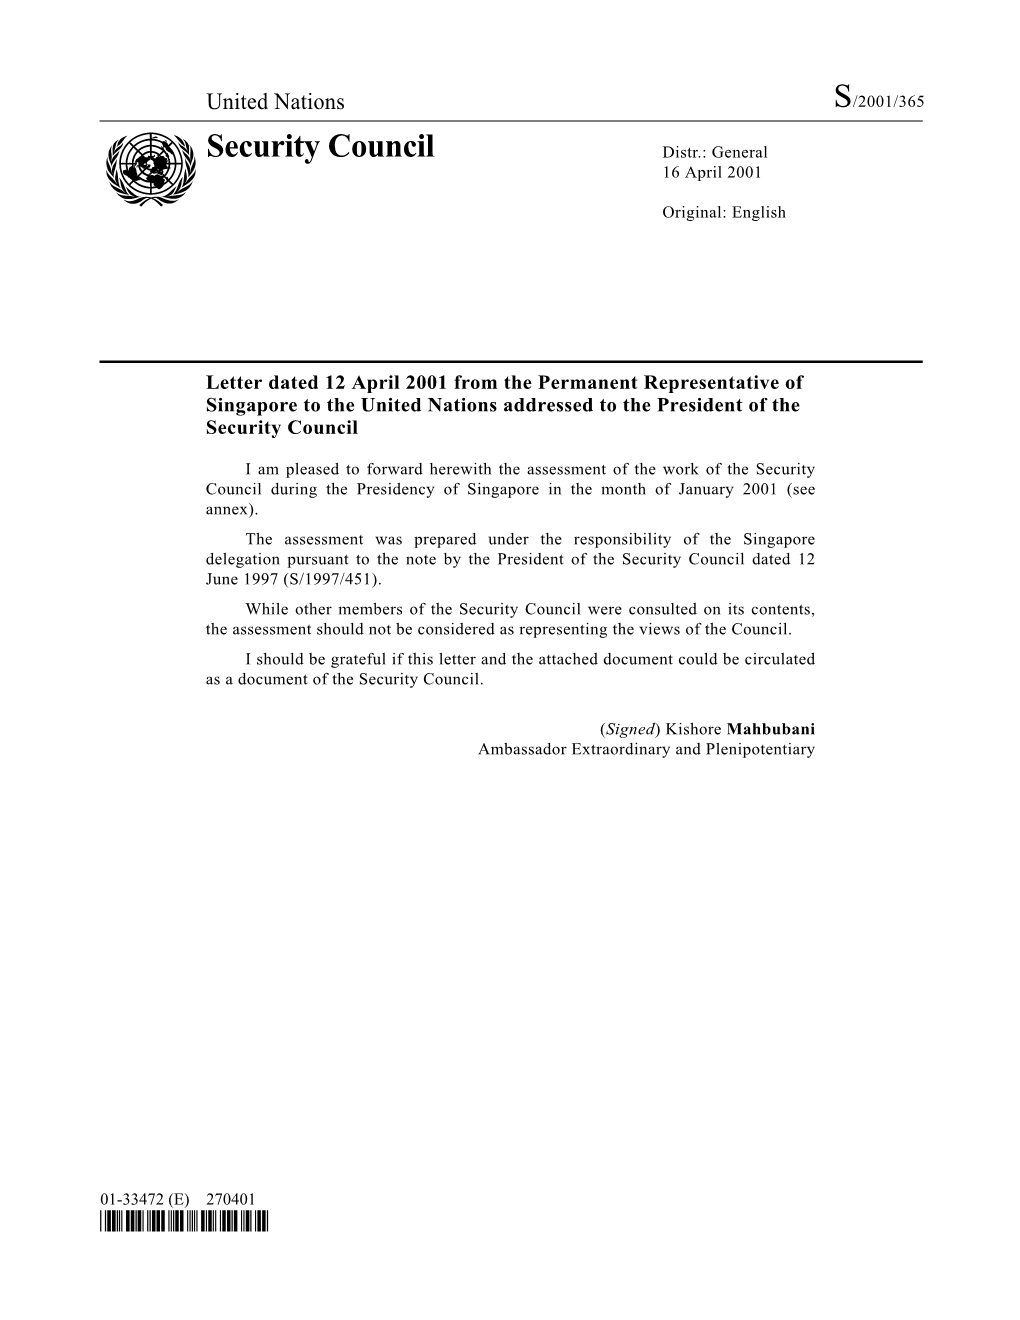 Security Council Distr.: General 16 April 2001